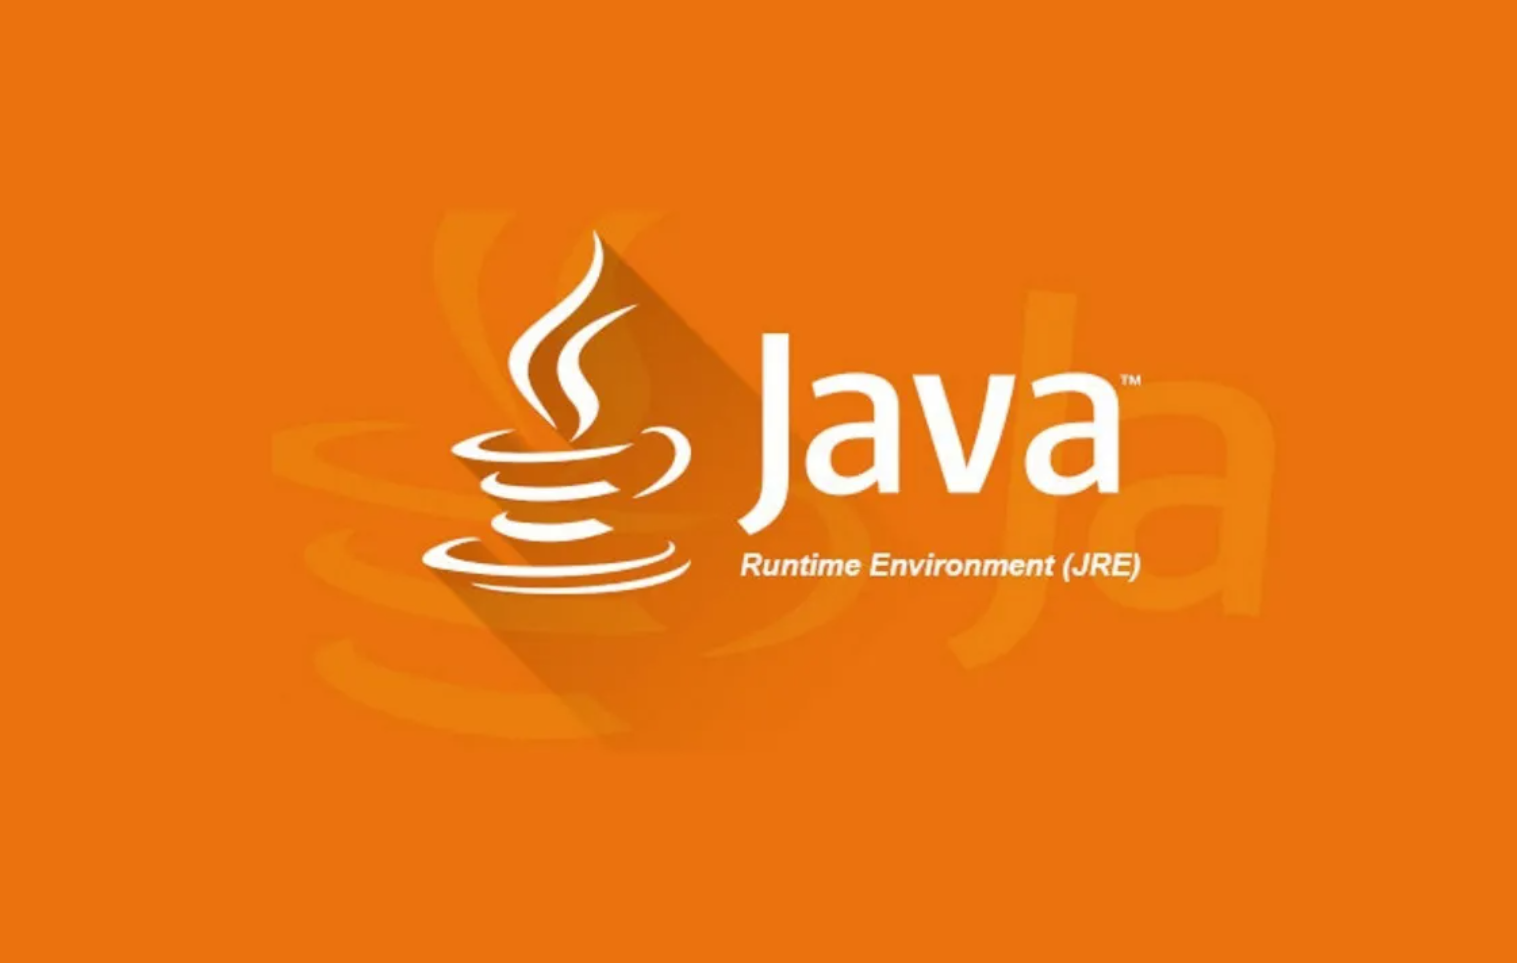 
JRE được thiết kế nhằm hỗ trợ chạy các chương trình Java
